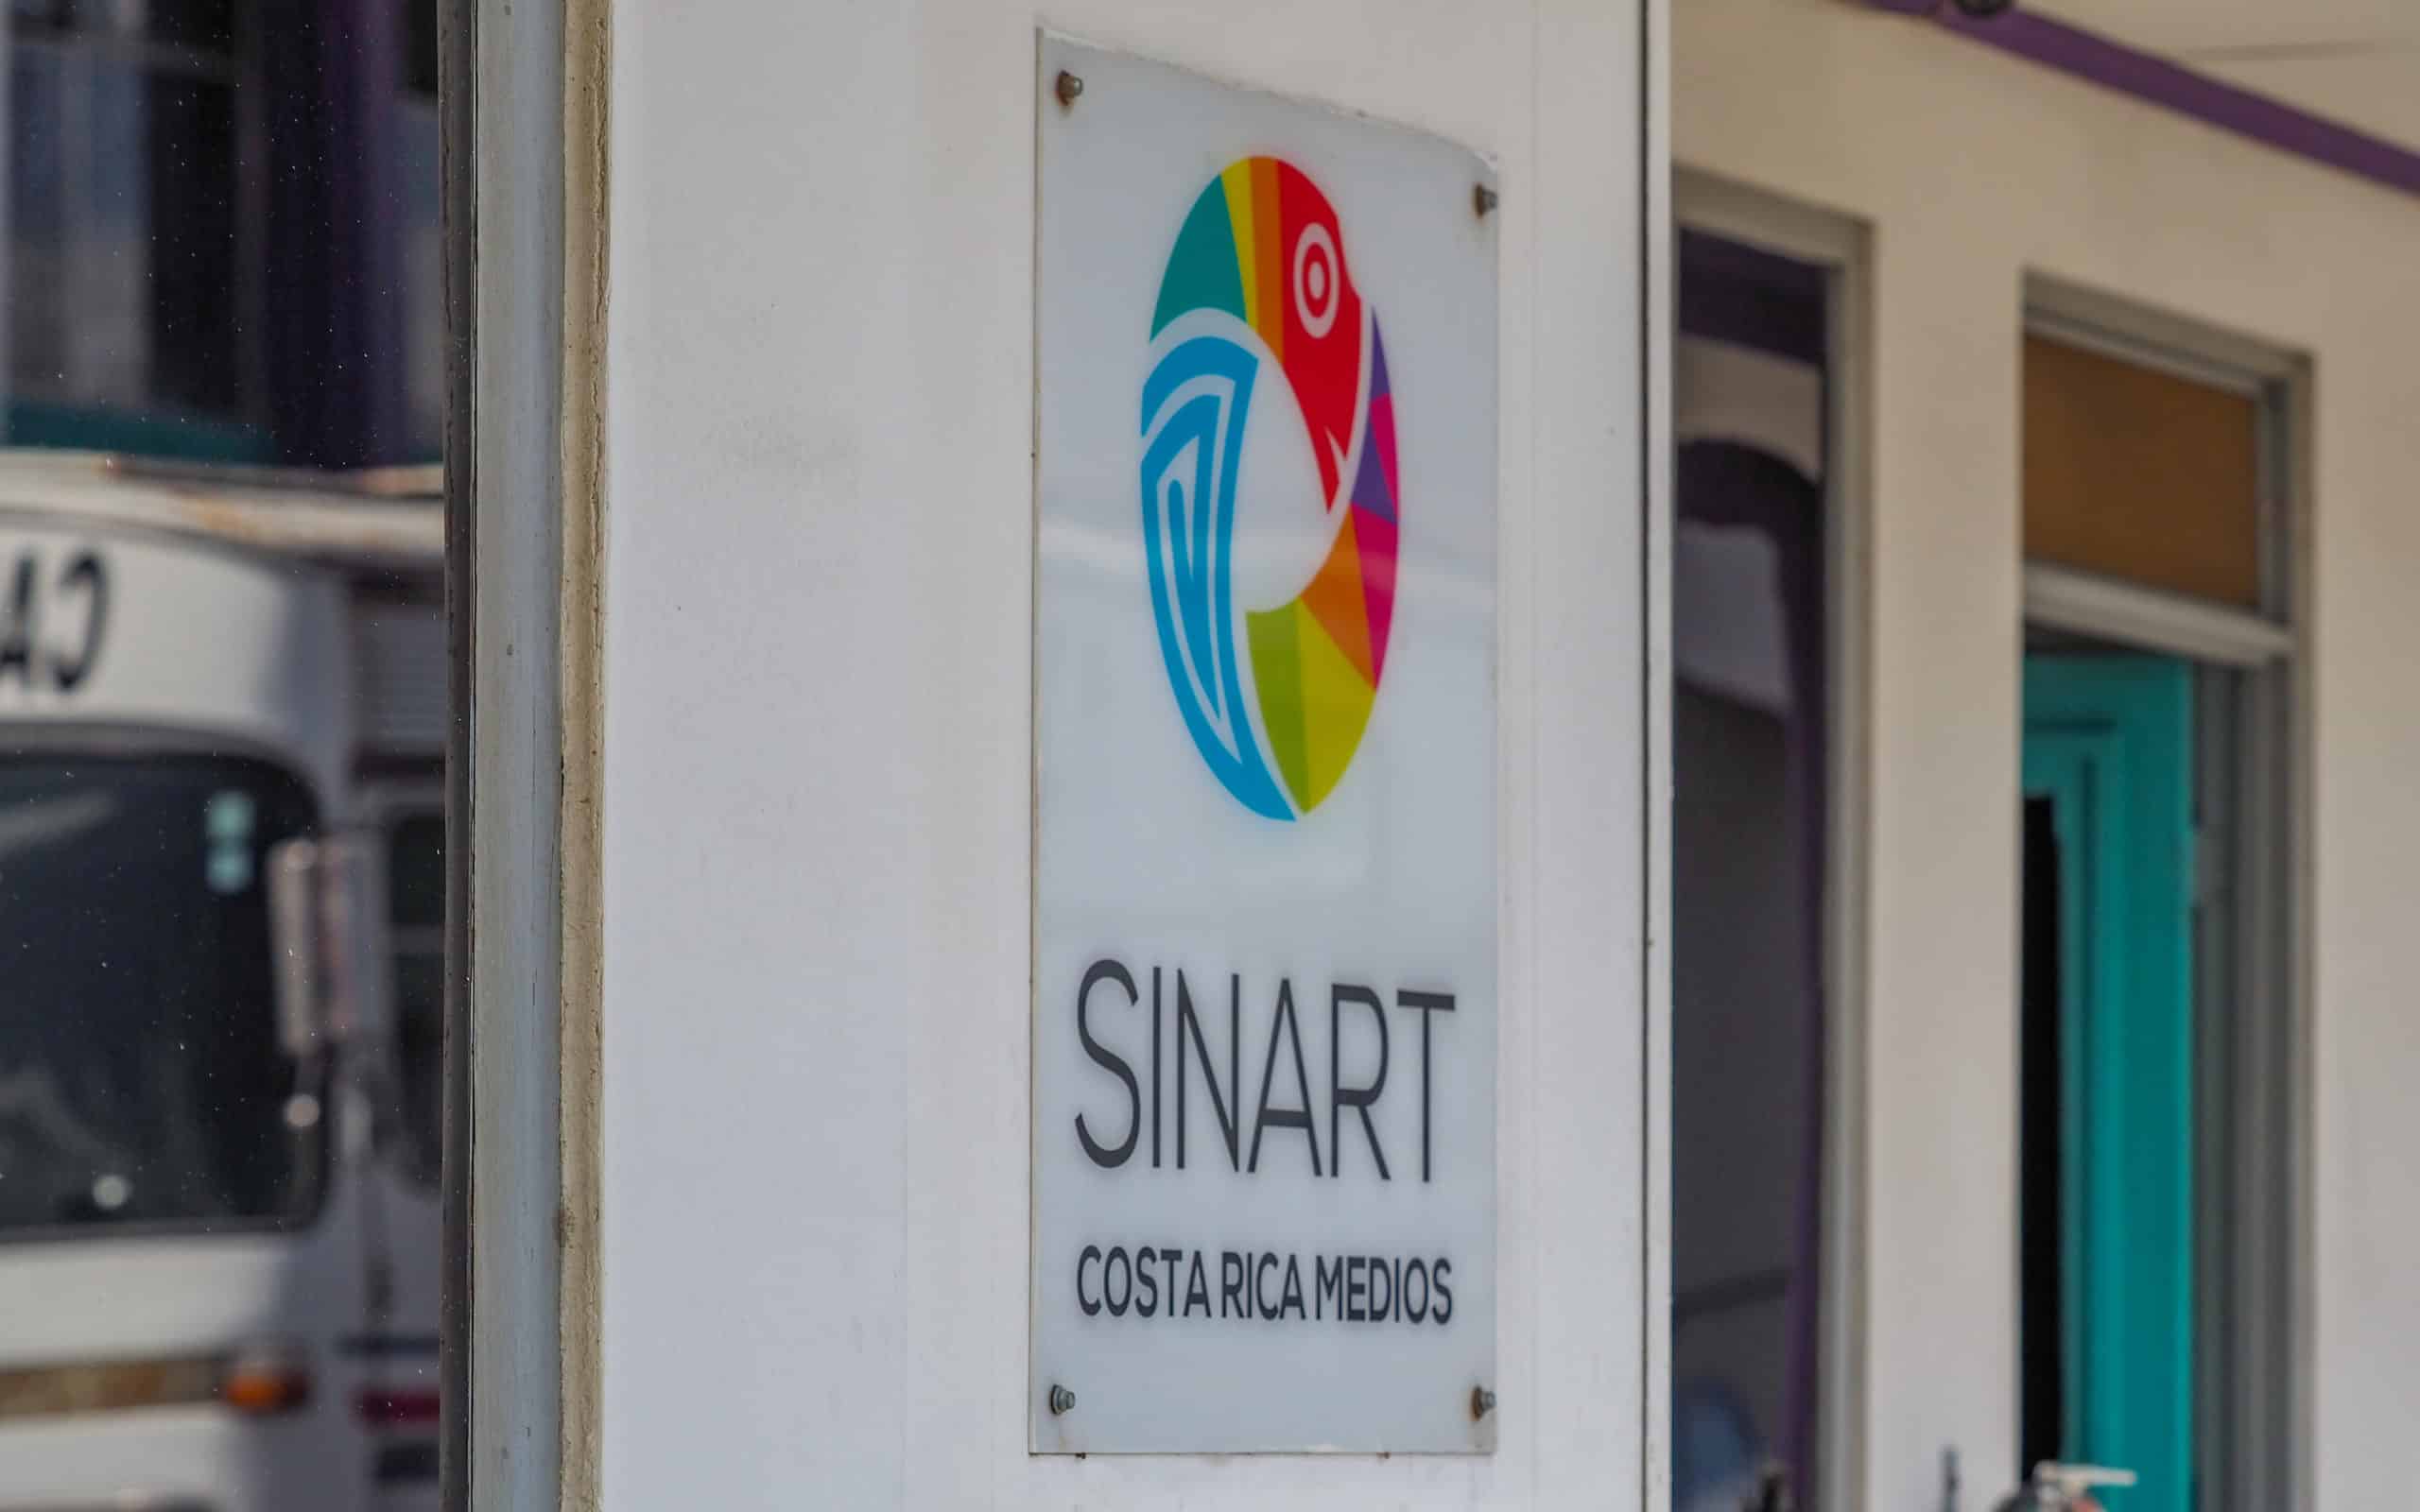 Diputados aprueban crear Comisión para investigar contratos de agencia de publicidad del Sinart